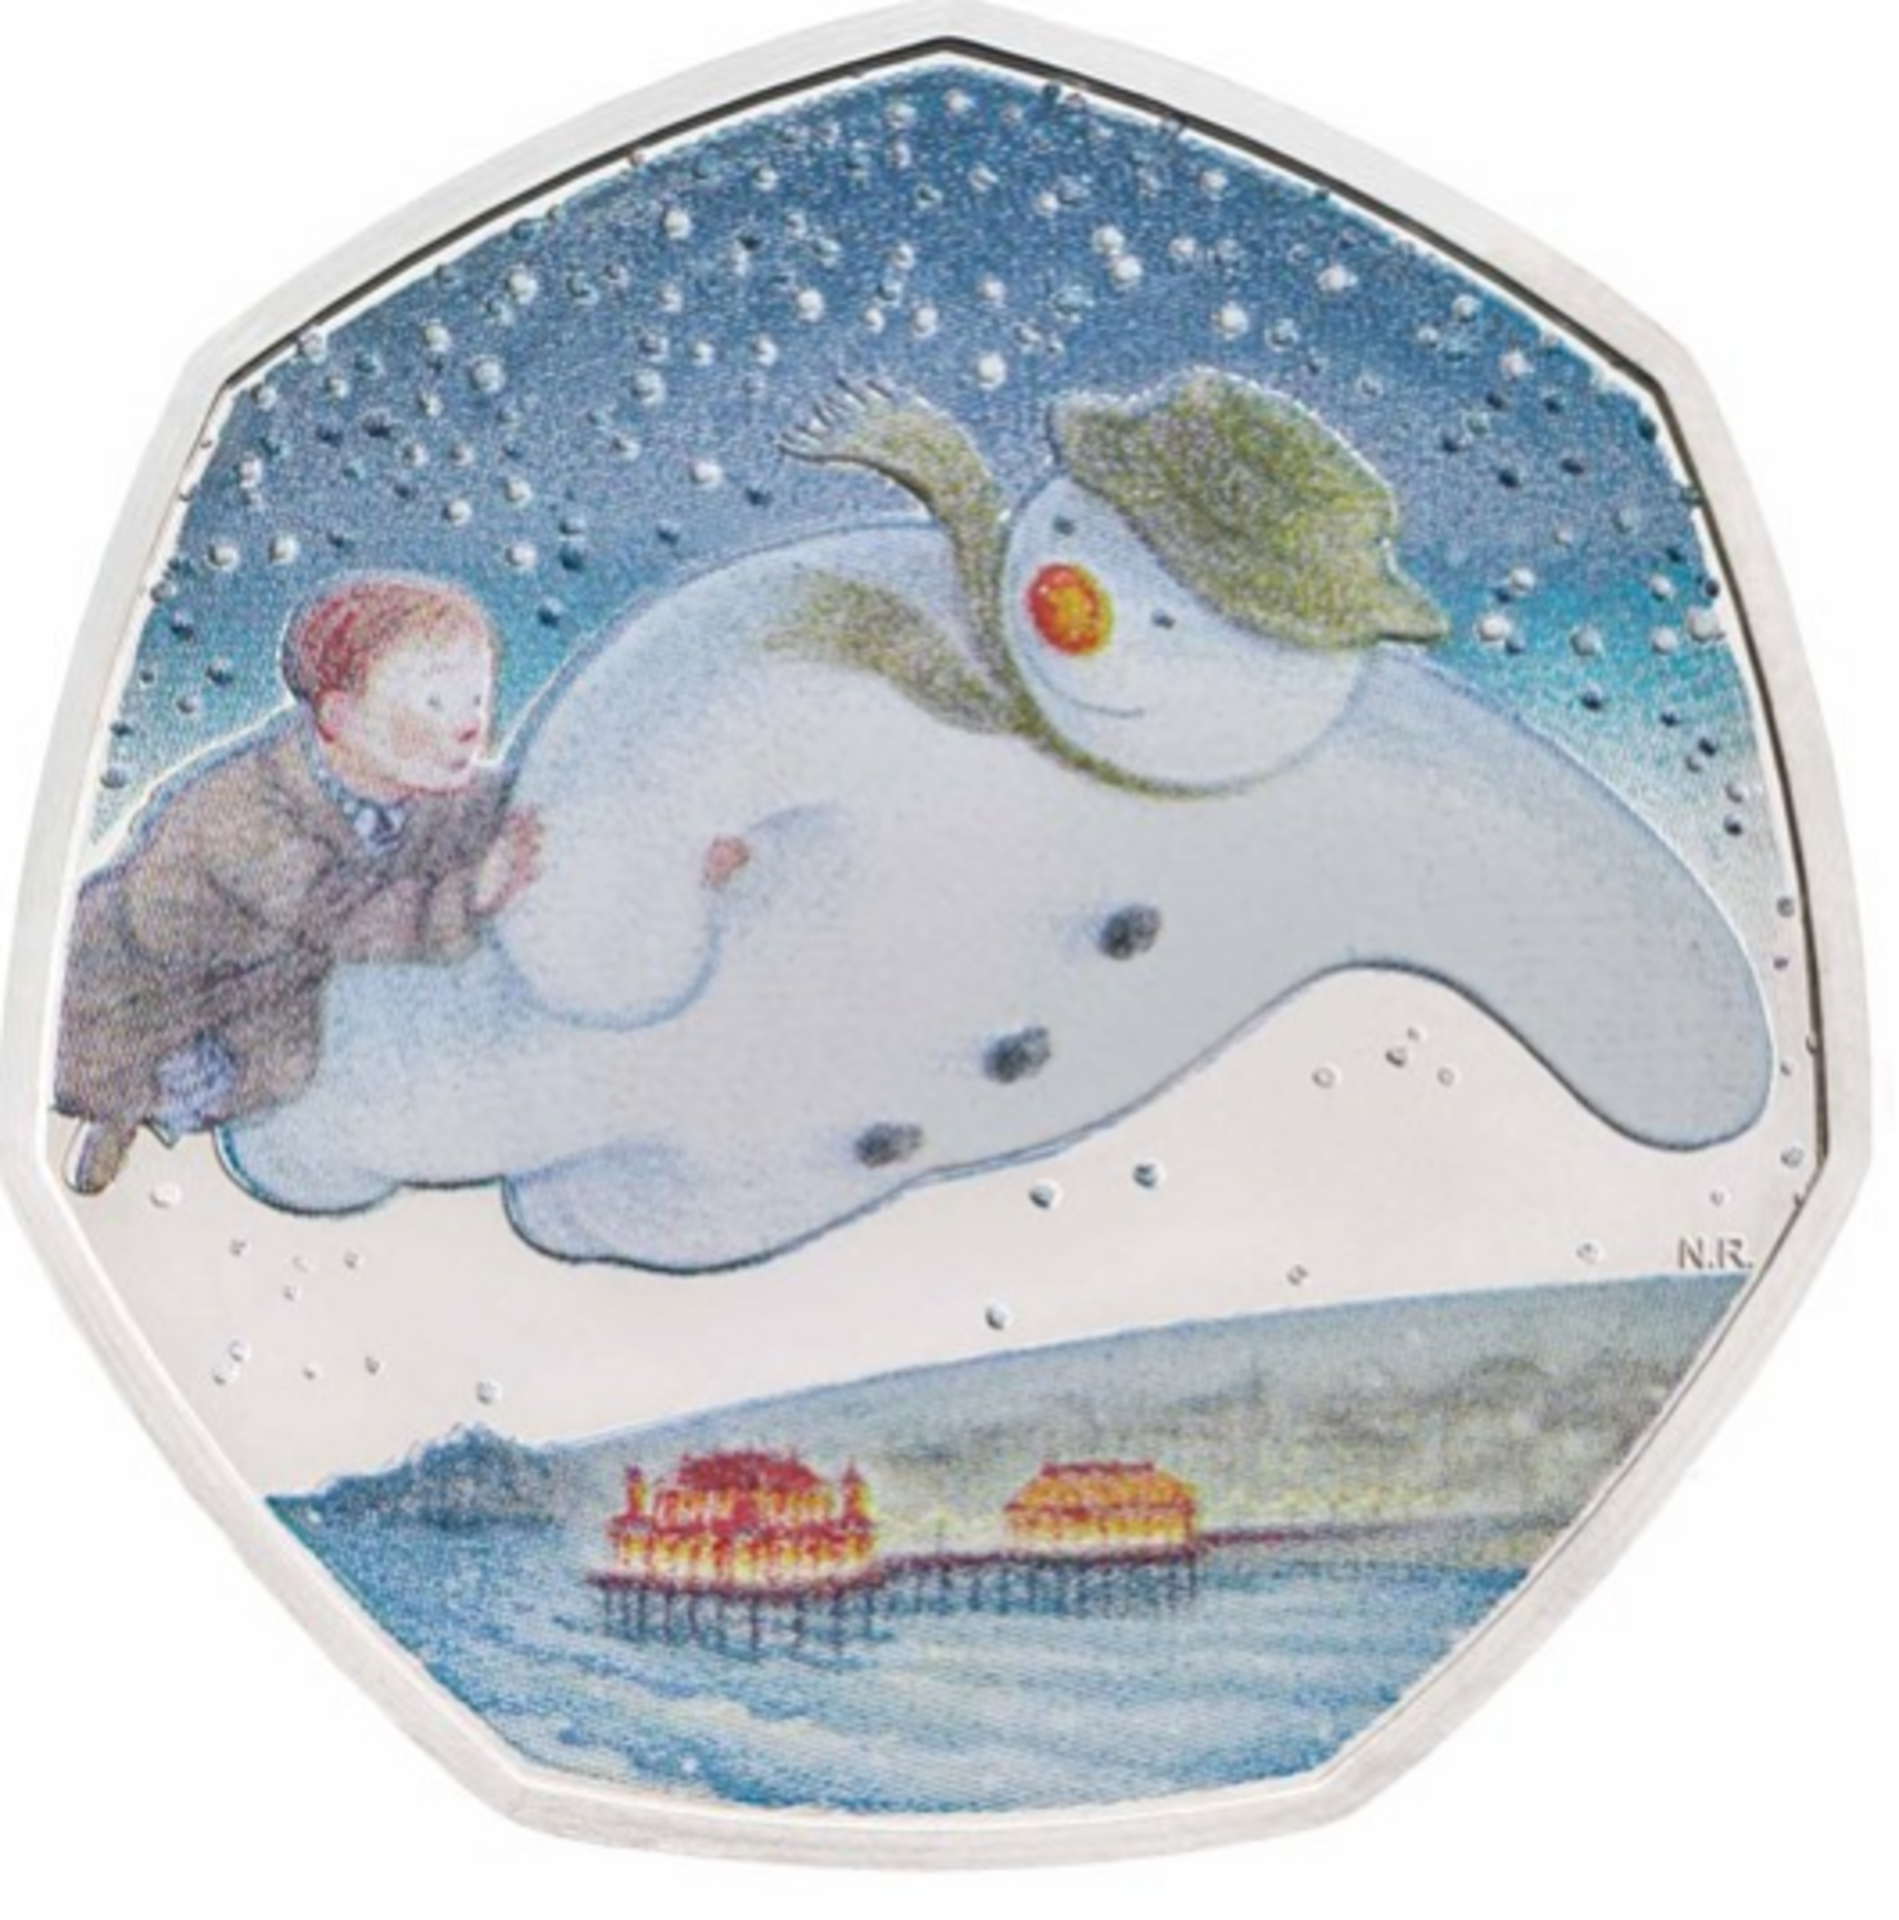 Royal Mint Snowman Gift set